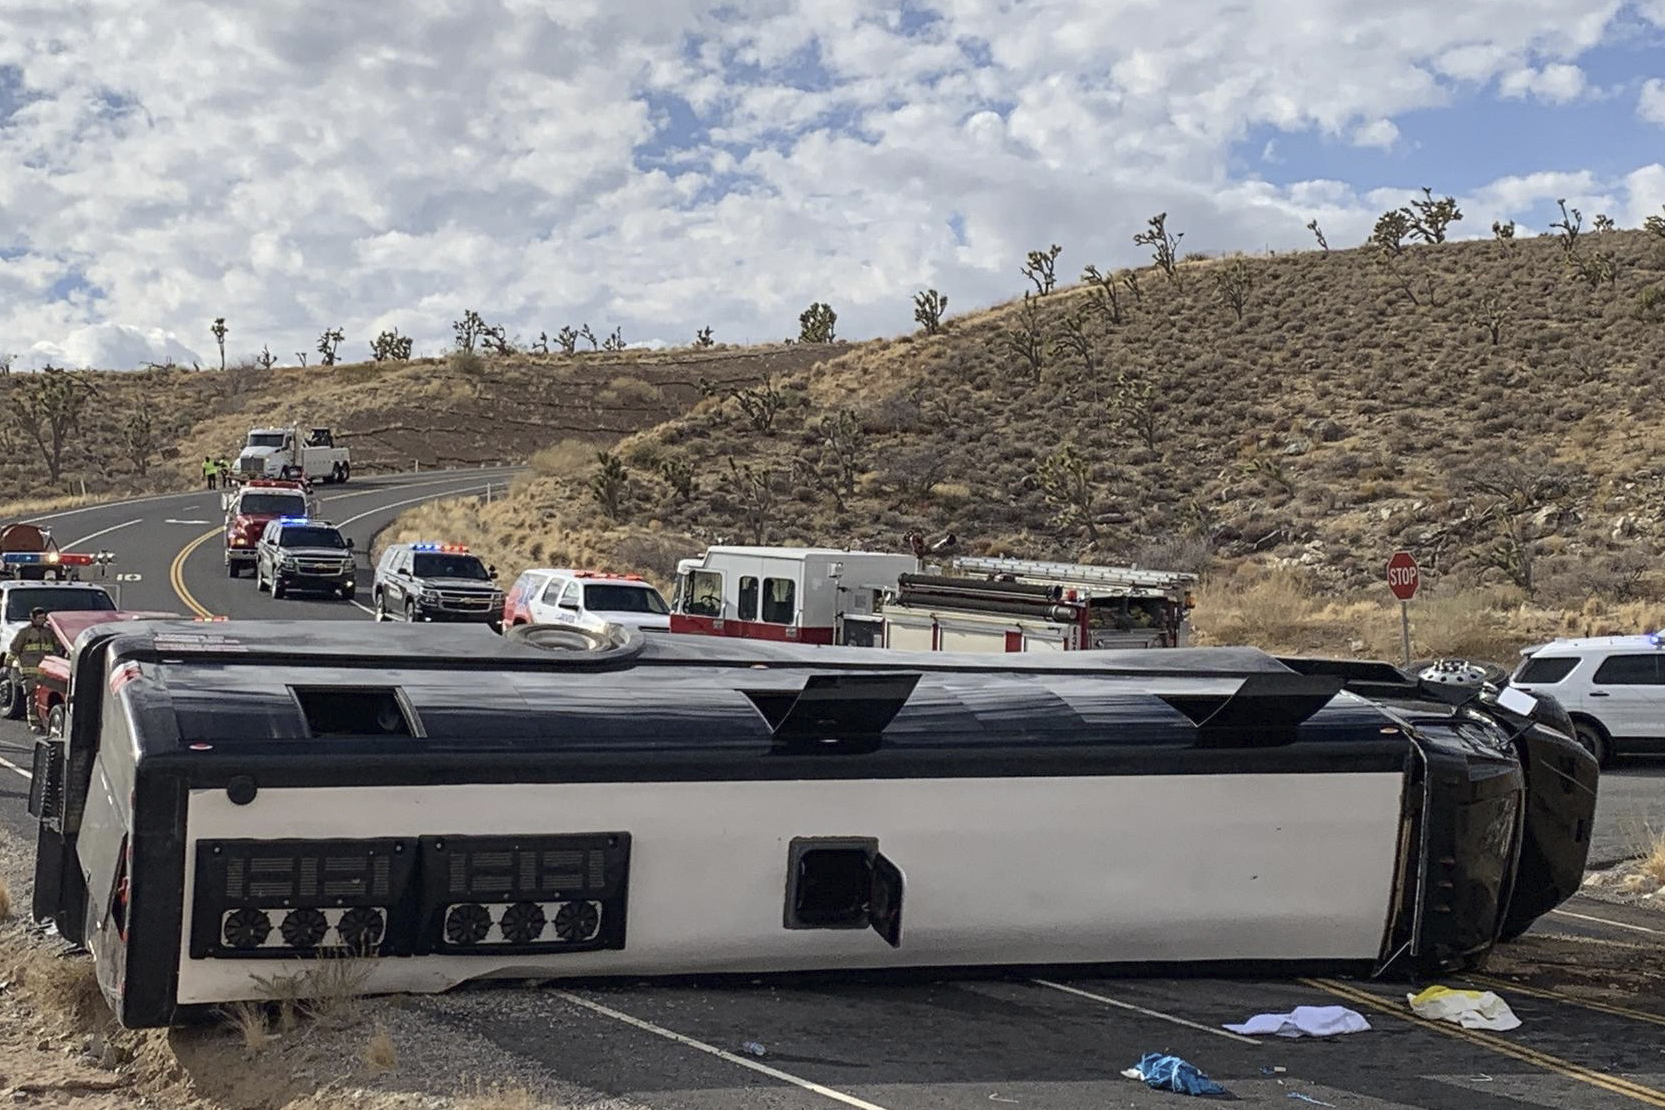 tour bus accident in arizona